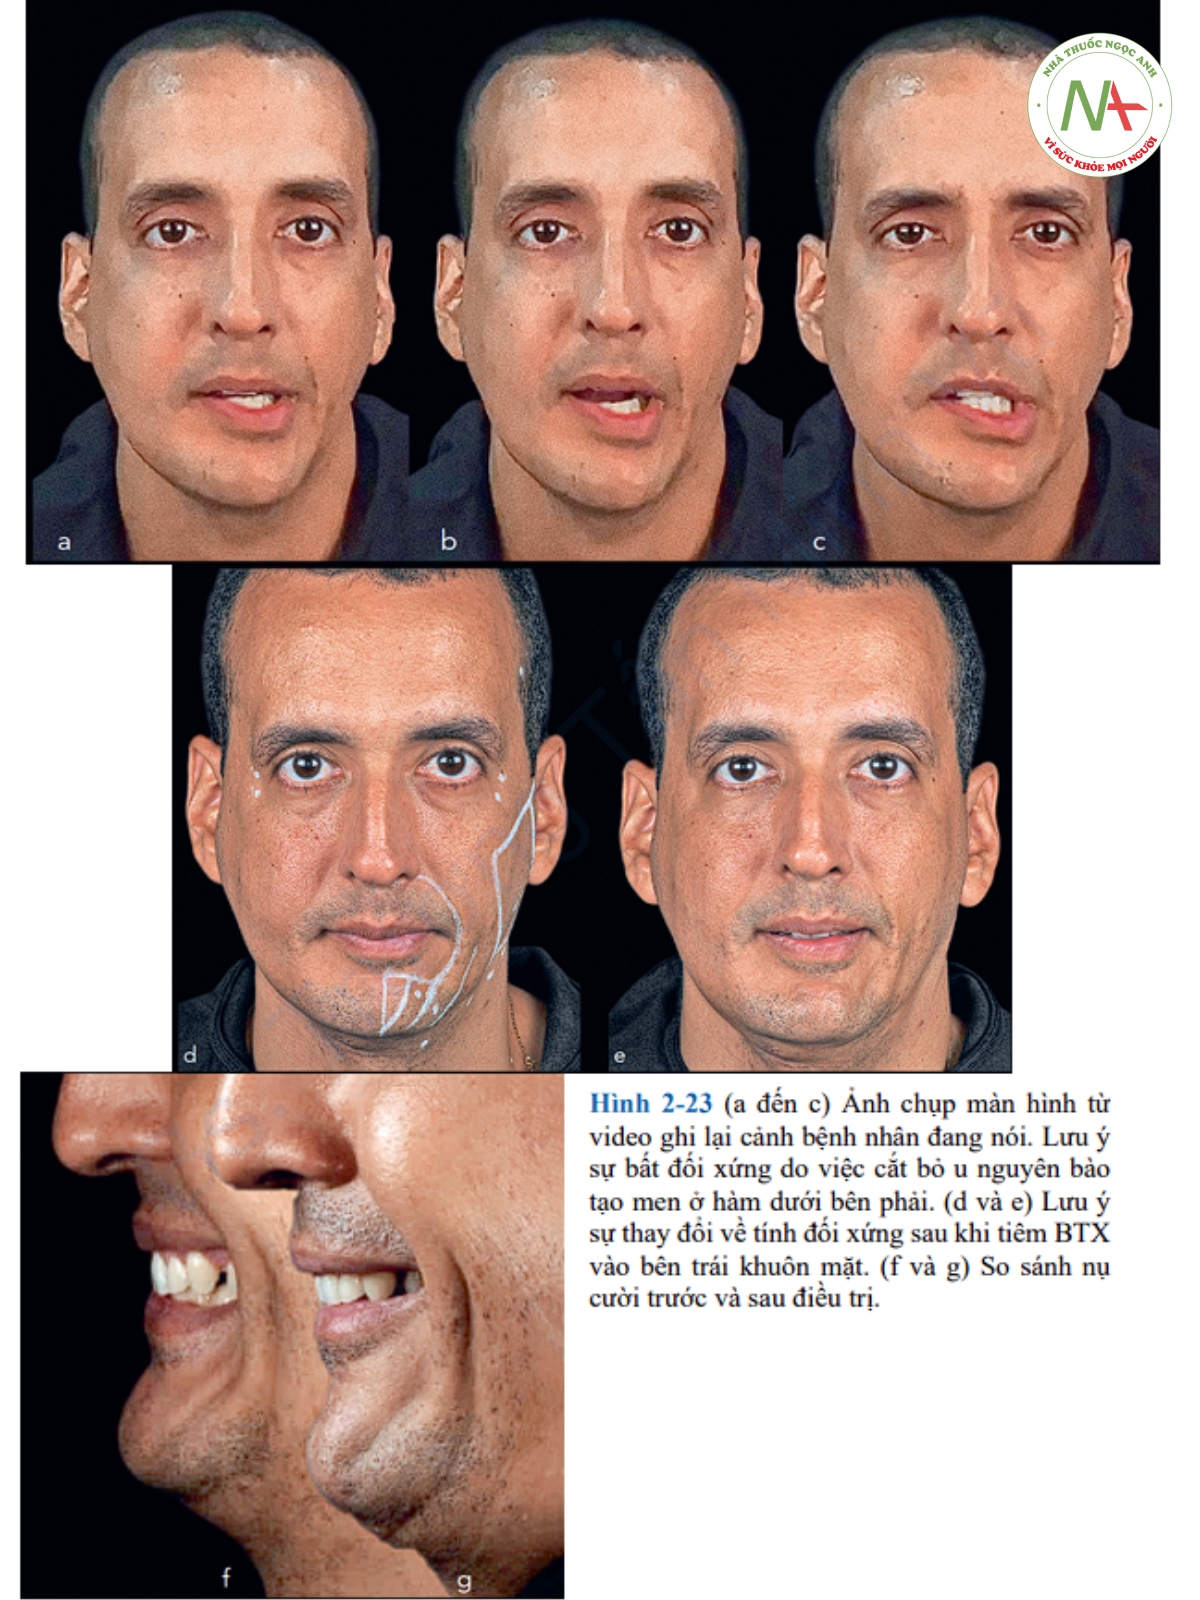 Hình 2-23 (a đến c) Ảnh chụp màn hình từ video ghi lại cảnh bệnh nhân đang nói. Lưu ý sự bất đối xứng do việc cắt bỏ u nguyên bào tạo men ở hàm dưới bên phải. (d và e) Lưu ý sự thay đổi về tính đối xứng sau khi tiêm BTX vào bên trái khuôn mặt. (f và g) So sánh nụ cười trước và sau điều trị.